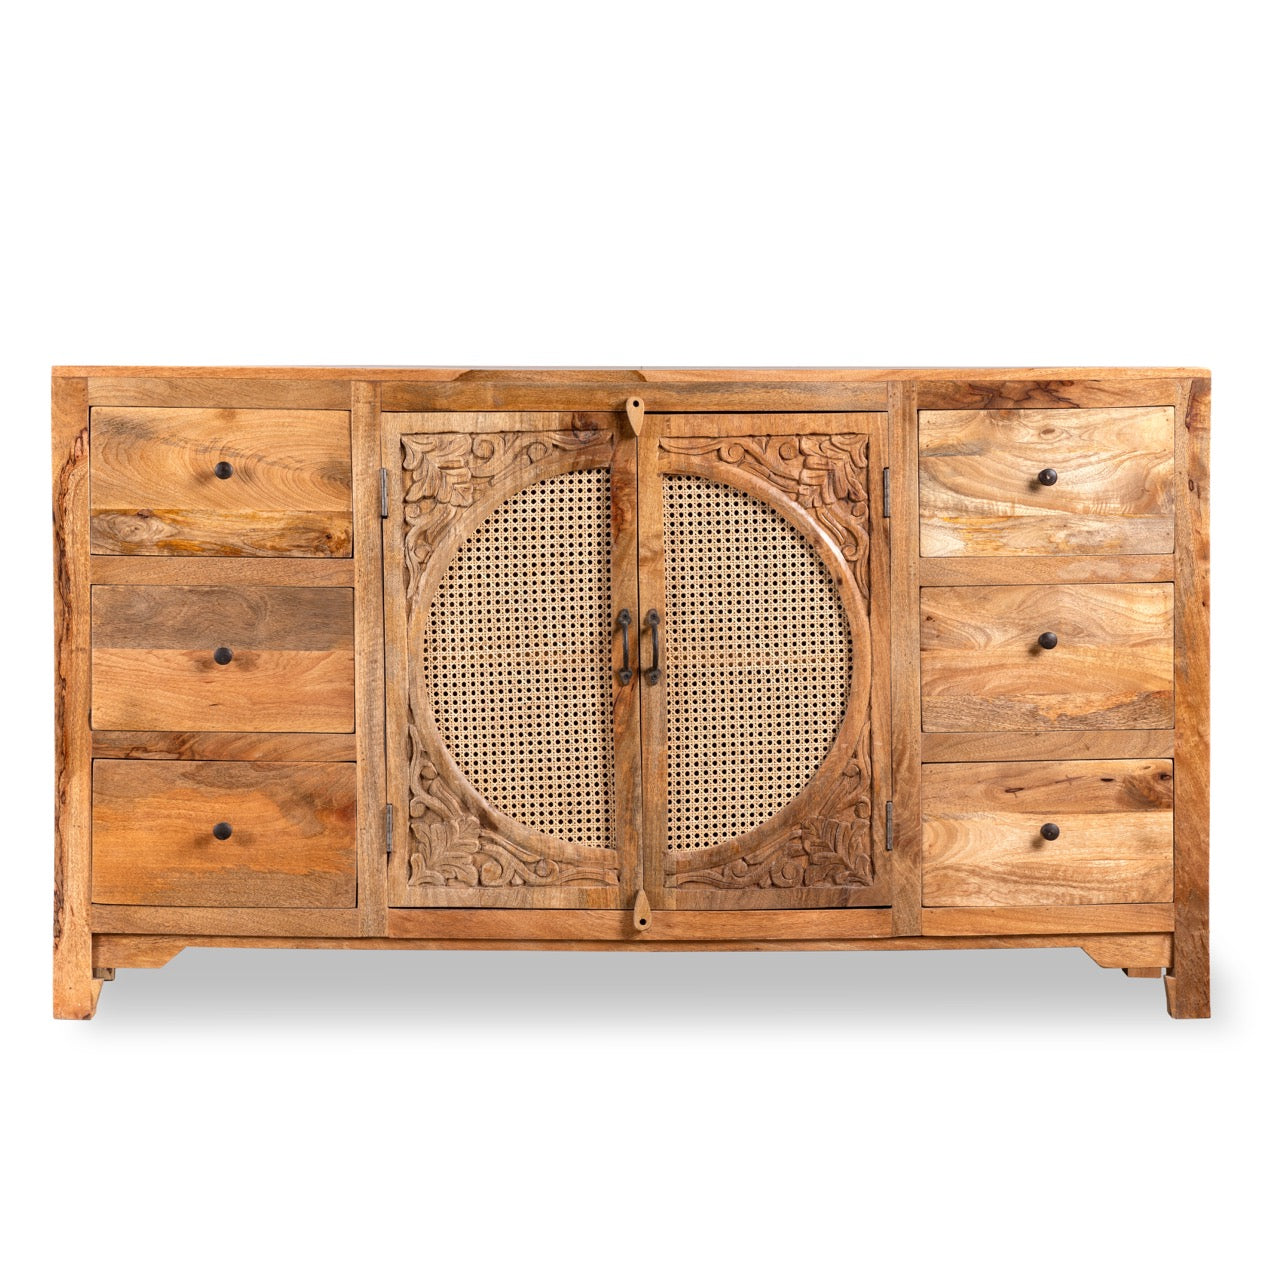 Randhir brown, vintage wooden sideboard